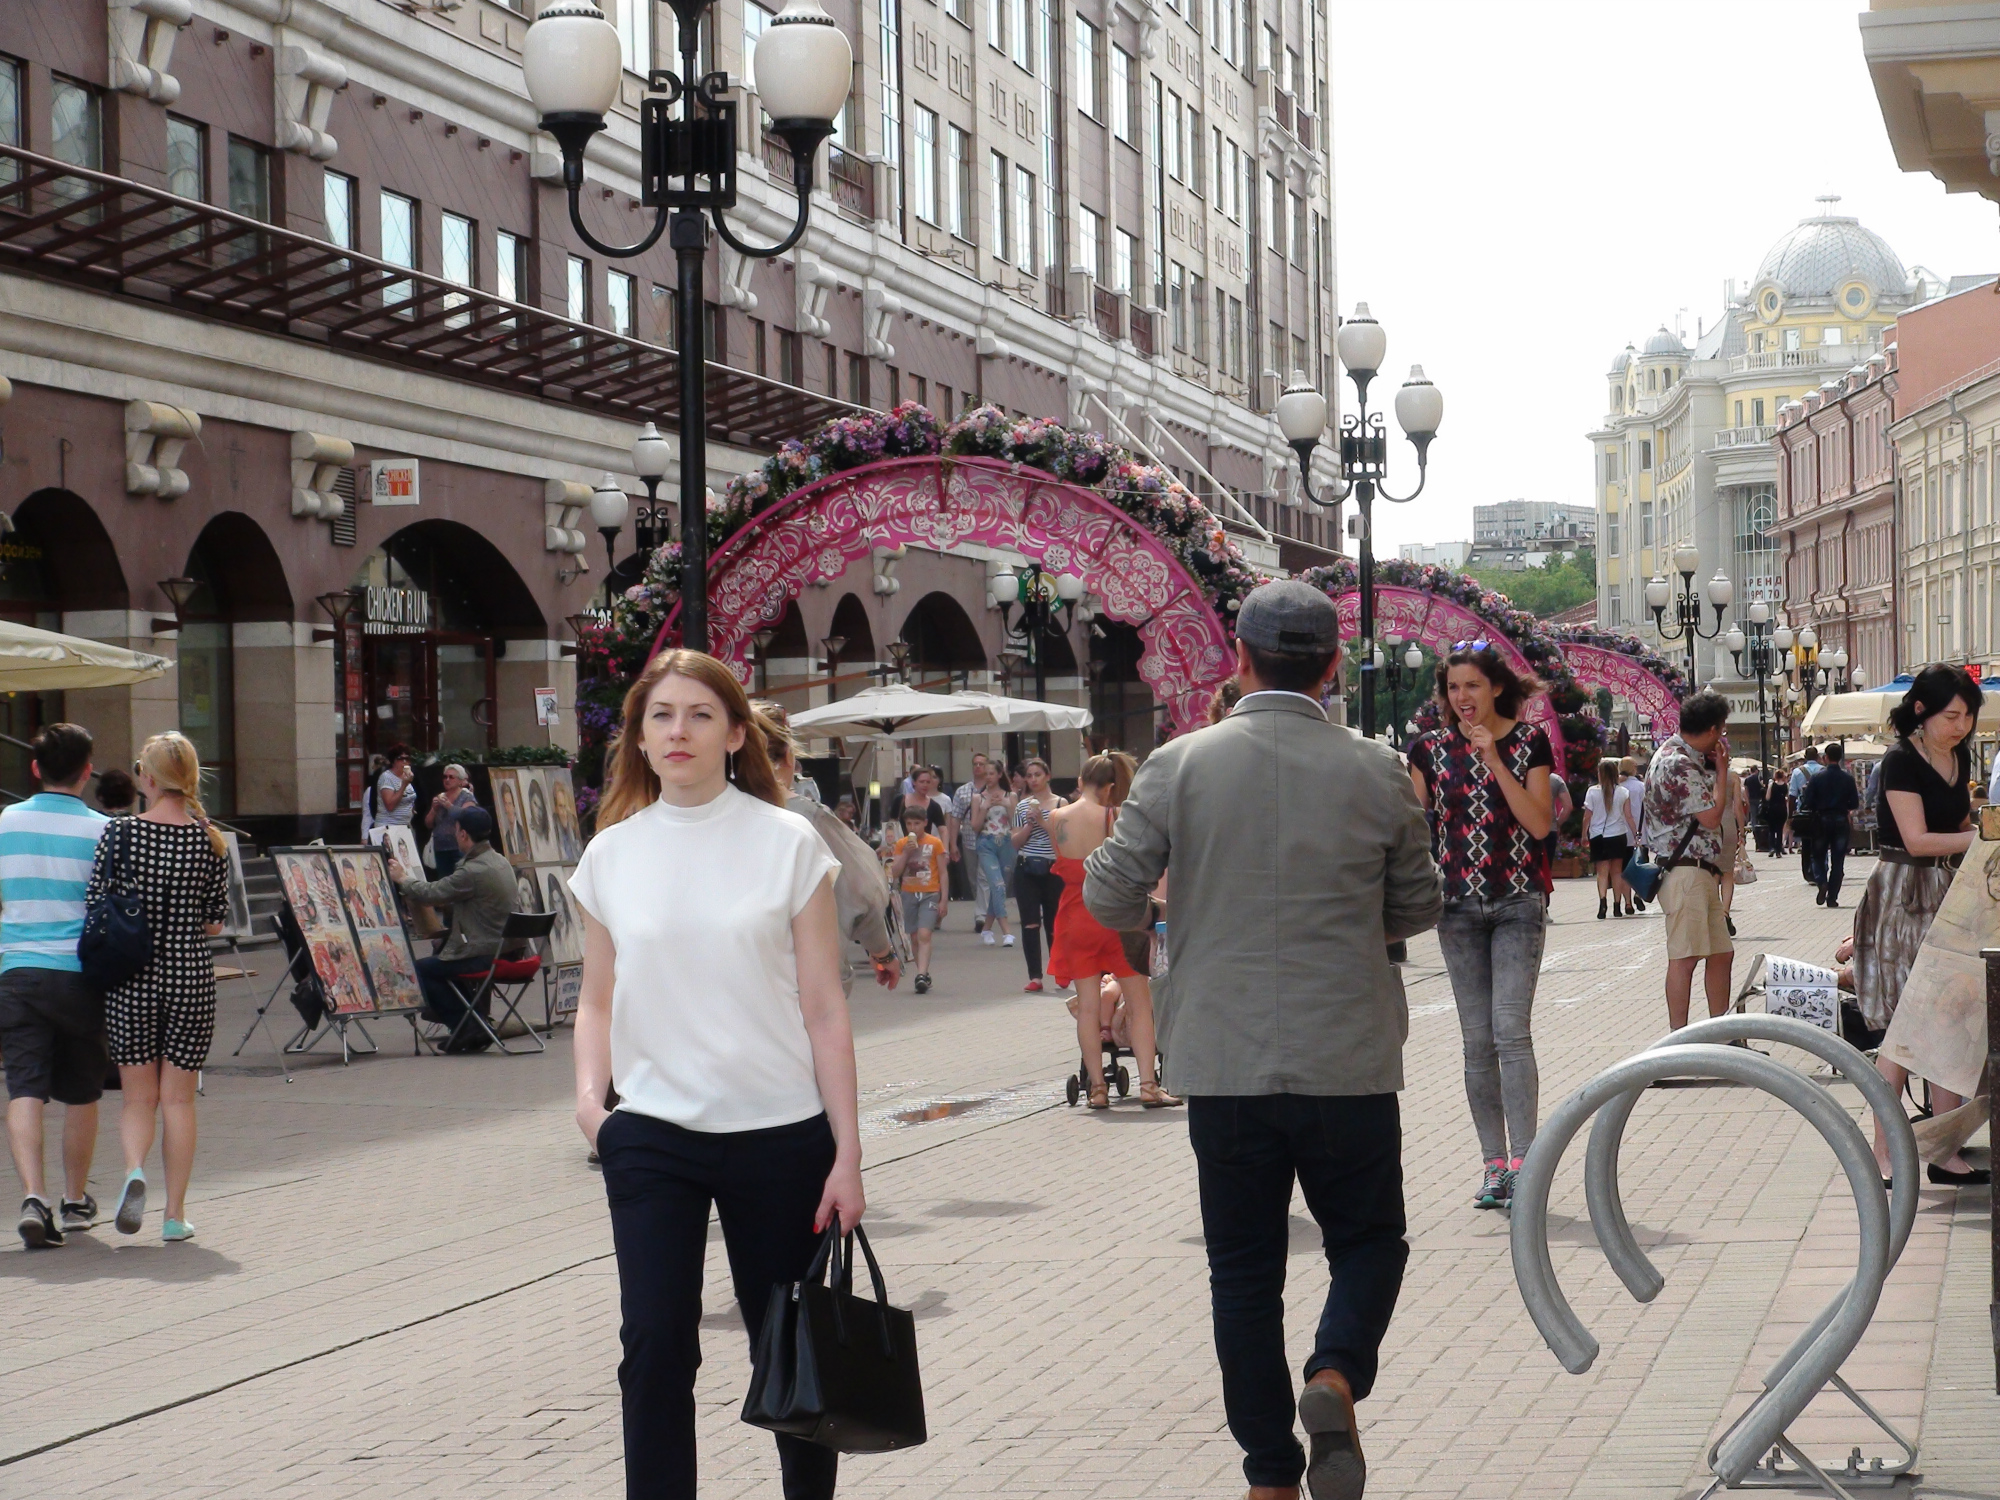 Gente paseando por la calle Arbat, la primera que se peatonalizó en Moscú. Foto: Daria Shuváeva